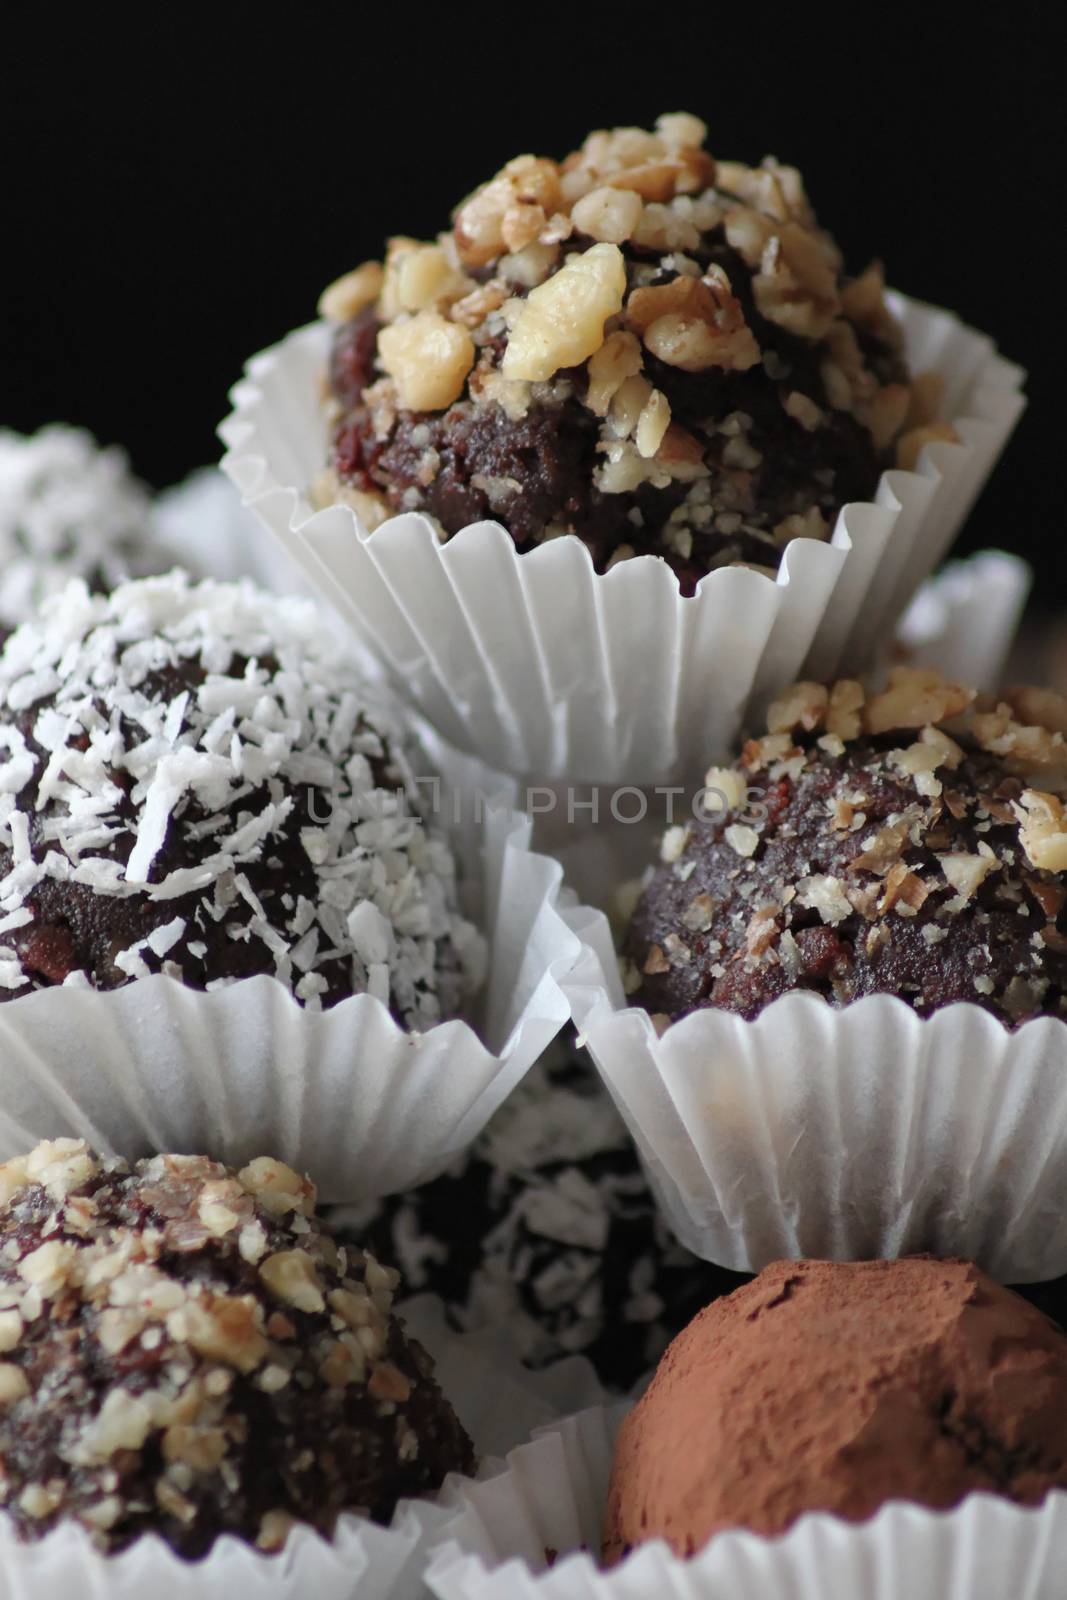 Chocolate muffins by Kasia_Lawrynowicz